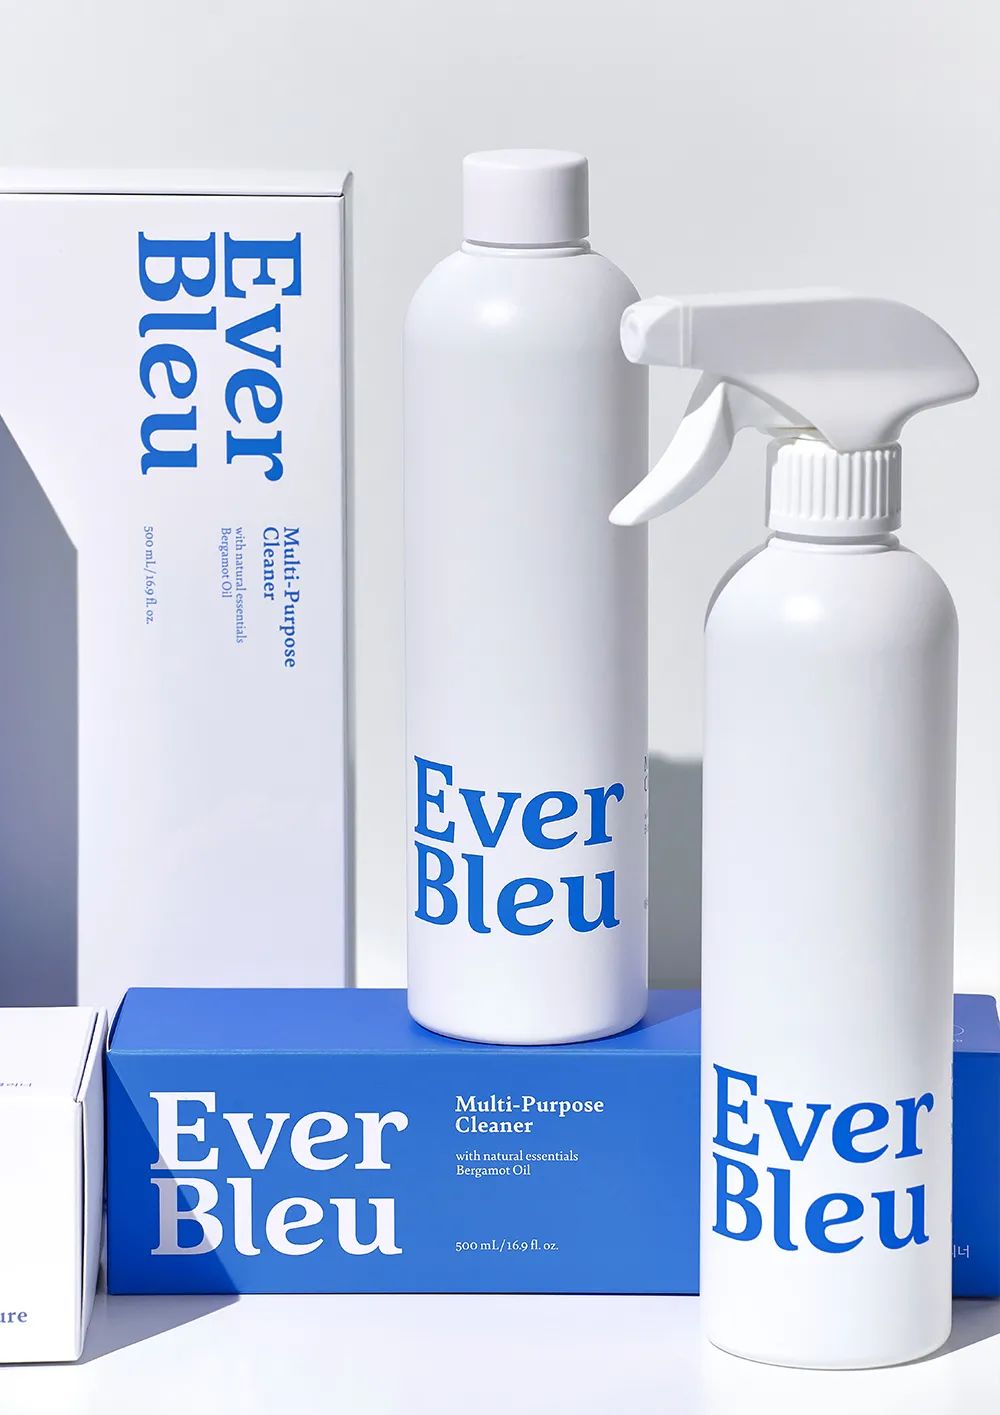 生活方式产品品牌“Ever Bleu”,品牌全案包装设计w21.jpg